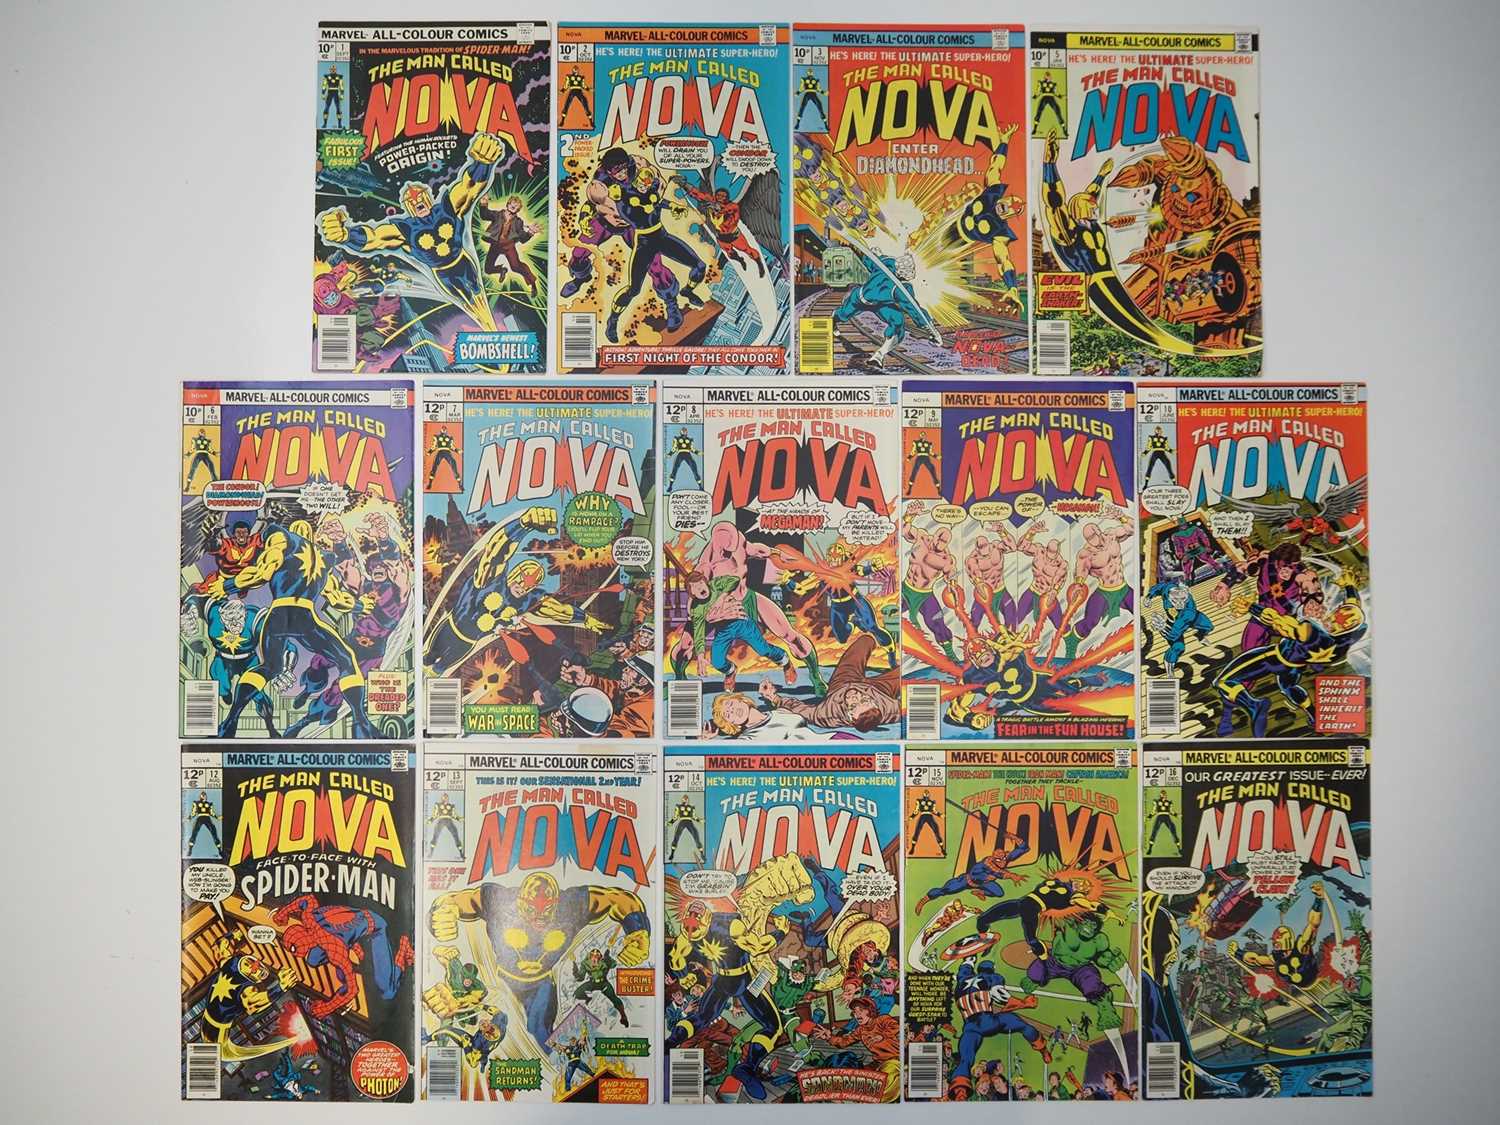 NOVA #1, 2, 3, 5, 6, 7, 8, 9, 10, 12, 13, 14, 15, 16 (14 in Lot) - (1976/1977 - MARVEL - UK Price